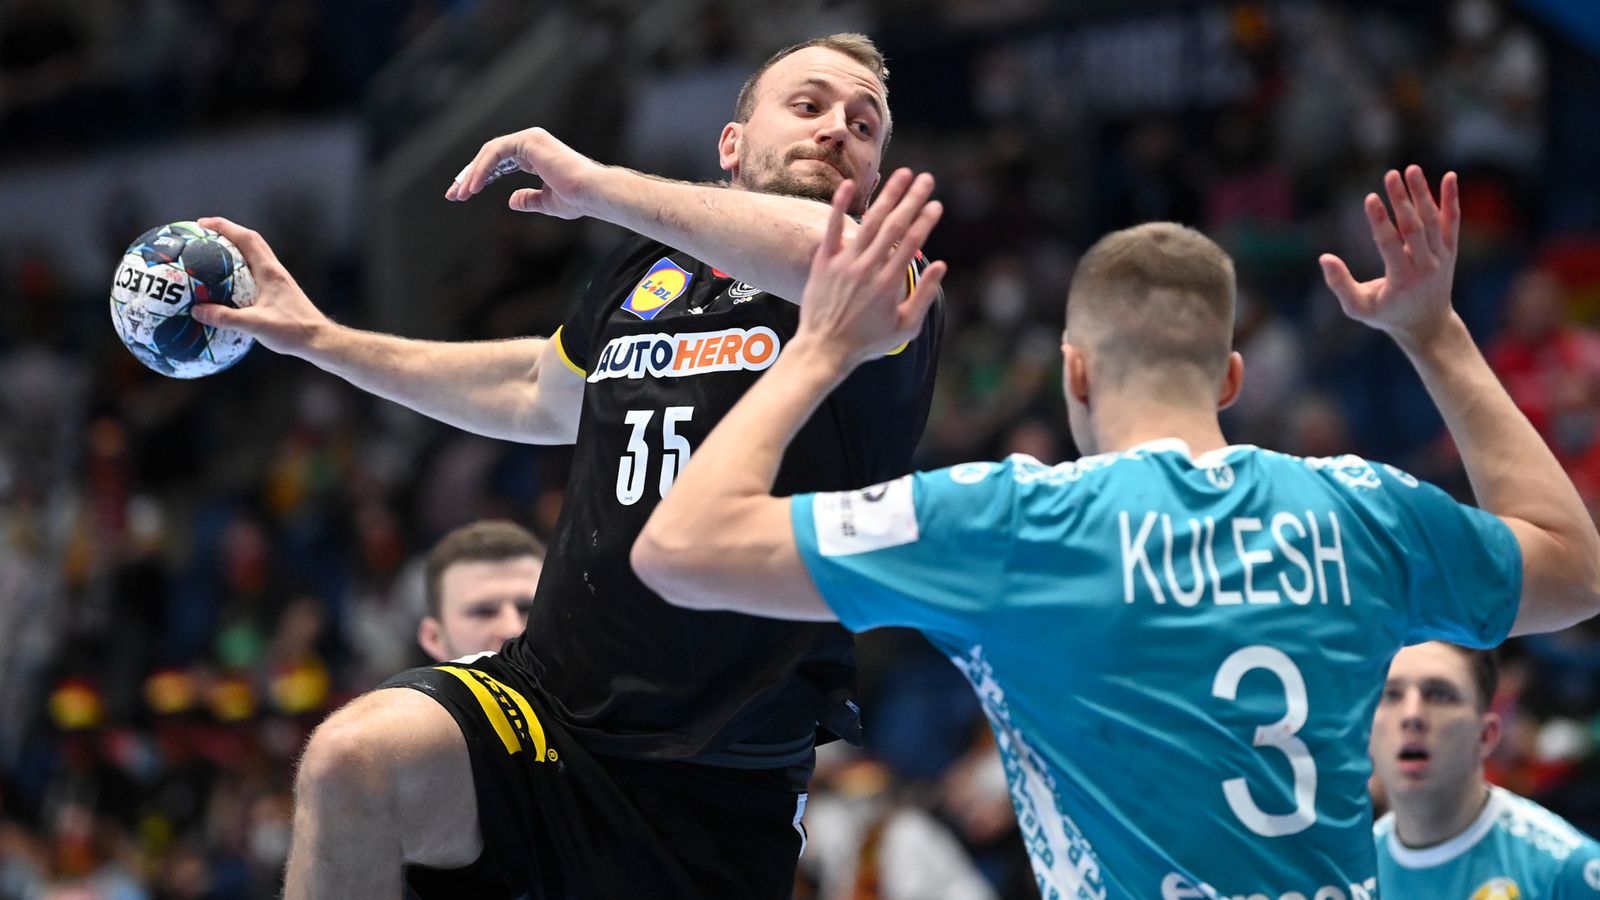 Handball EM News Julius Kühn positiv auf Corona getestet Handball News Sky Sport